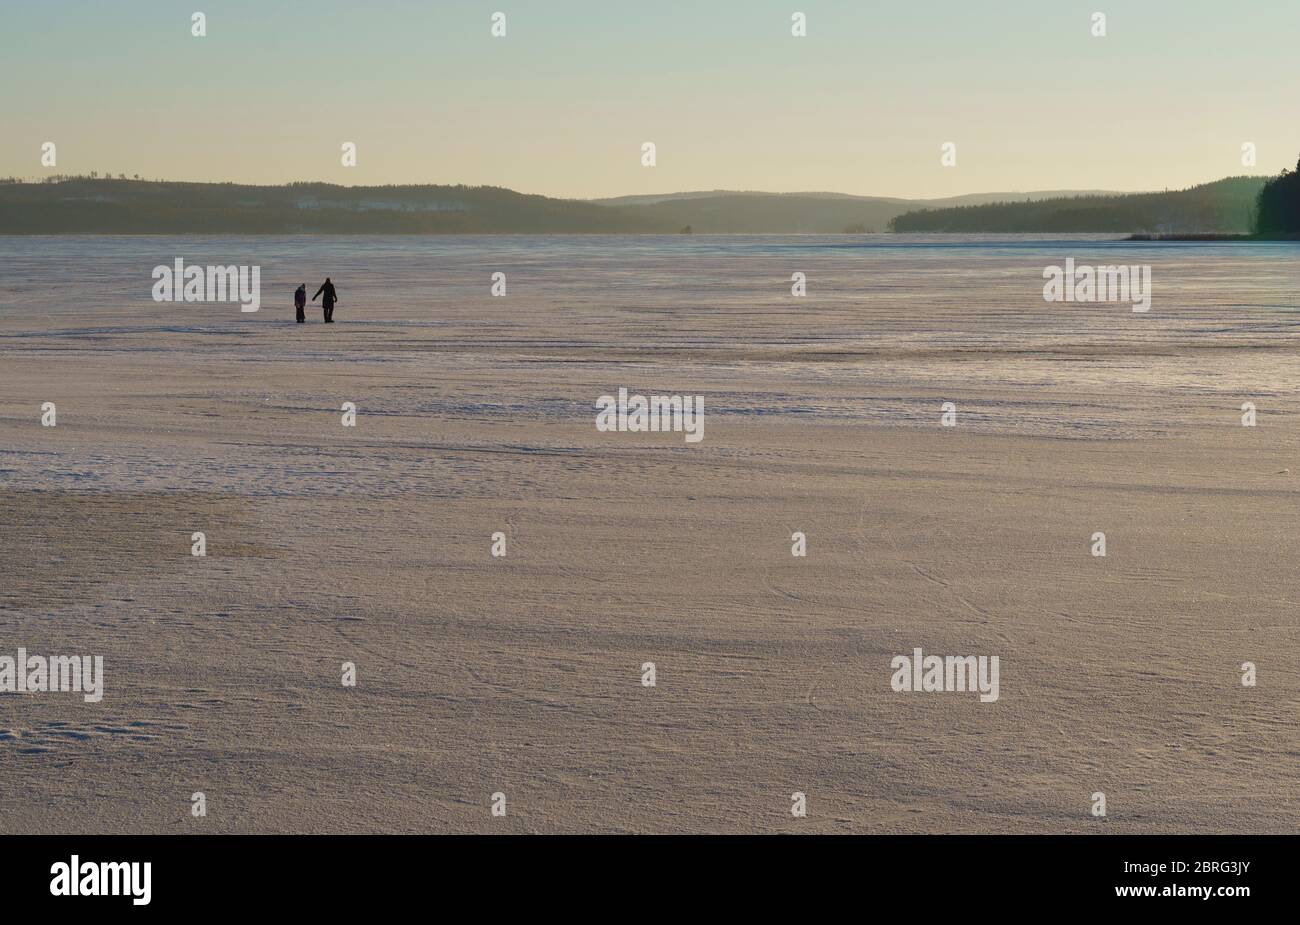 Homme et femme marchant sur la glace au lac gelé Päijänne à Winter, Finlande Banque D'Images